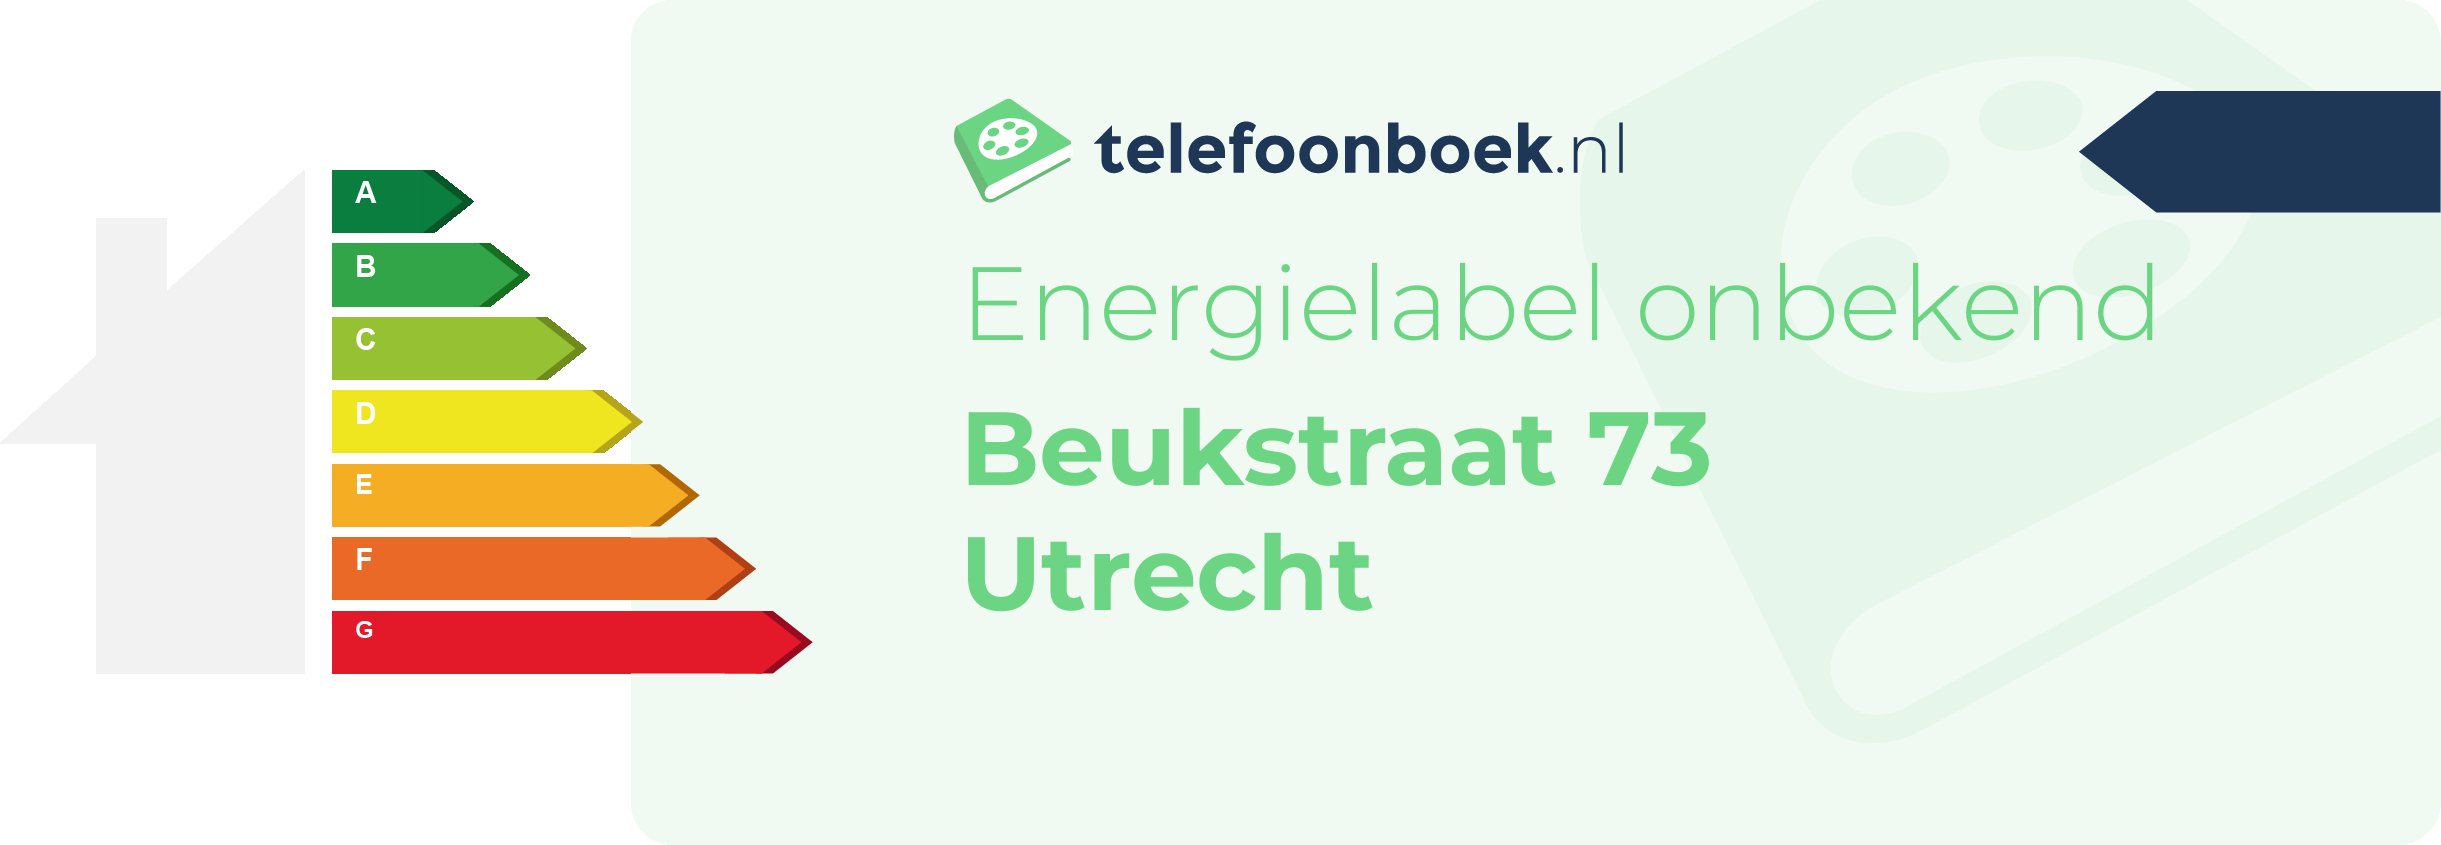 Energielabel Beukstraat 73 Utrecht